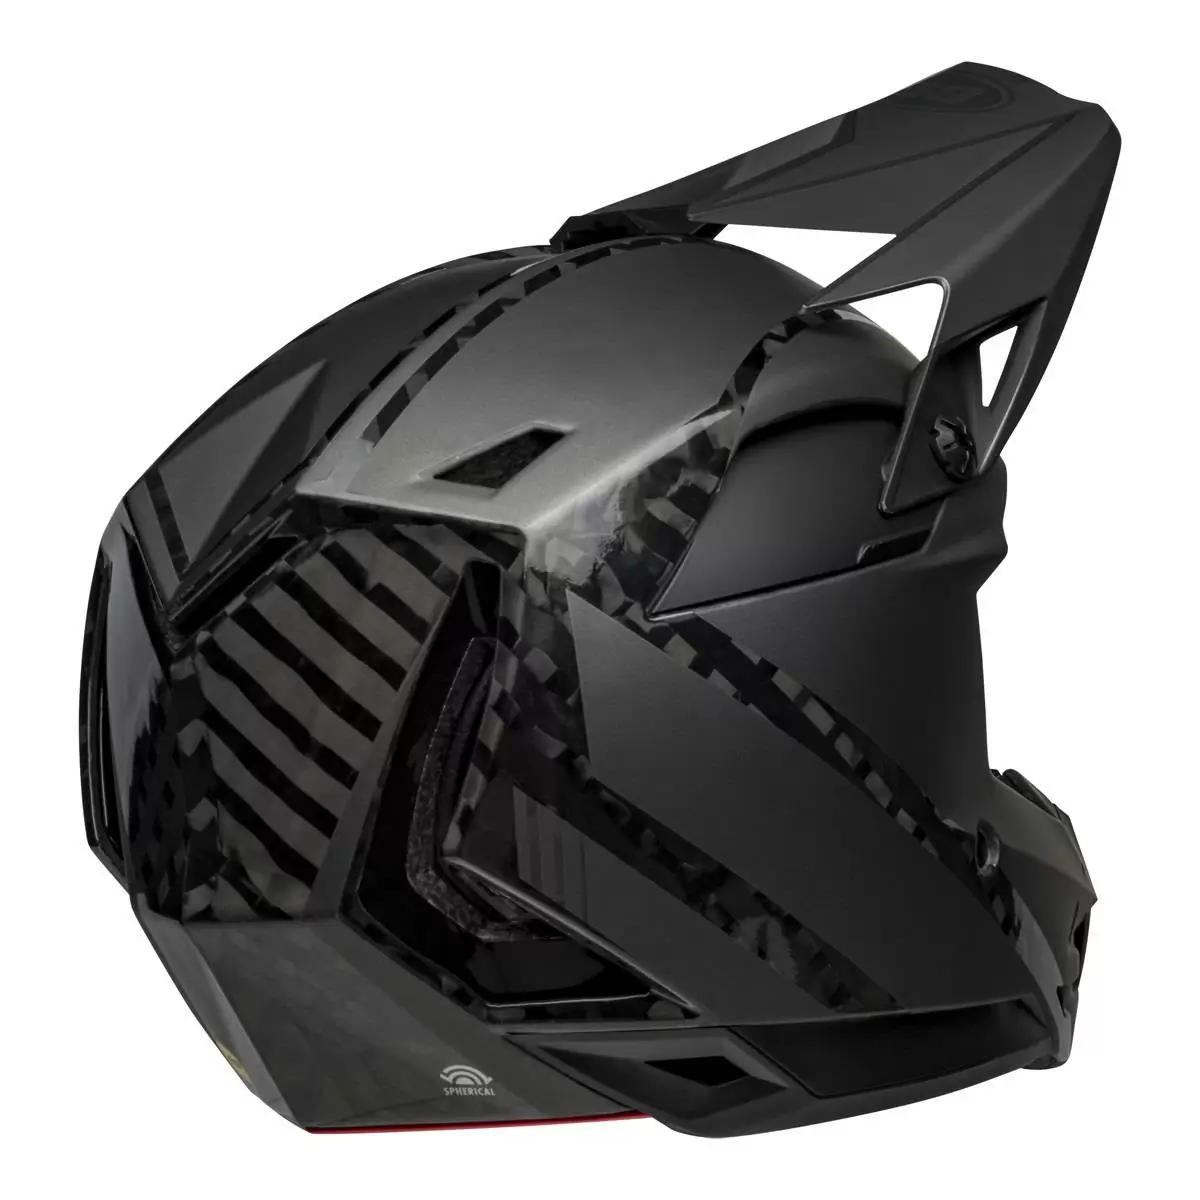 Full-10 Spherical Arise Matte / Gloss Black Carbon Full Face Helmet Size XS/S (51-55cm) #4